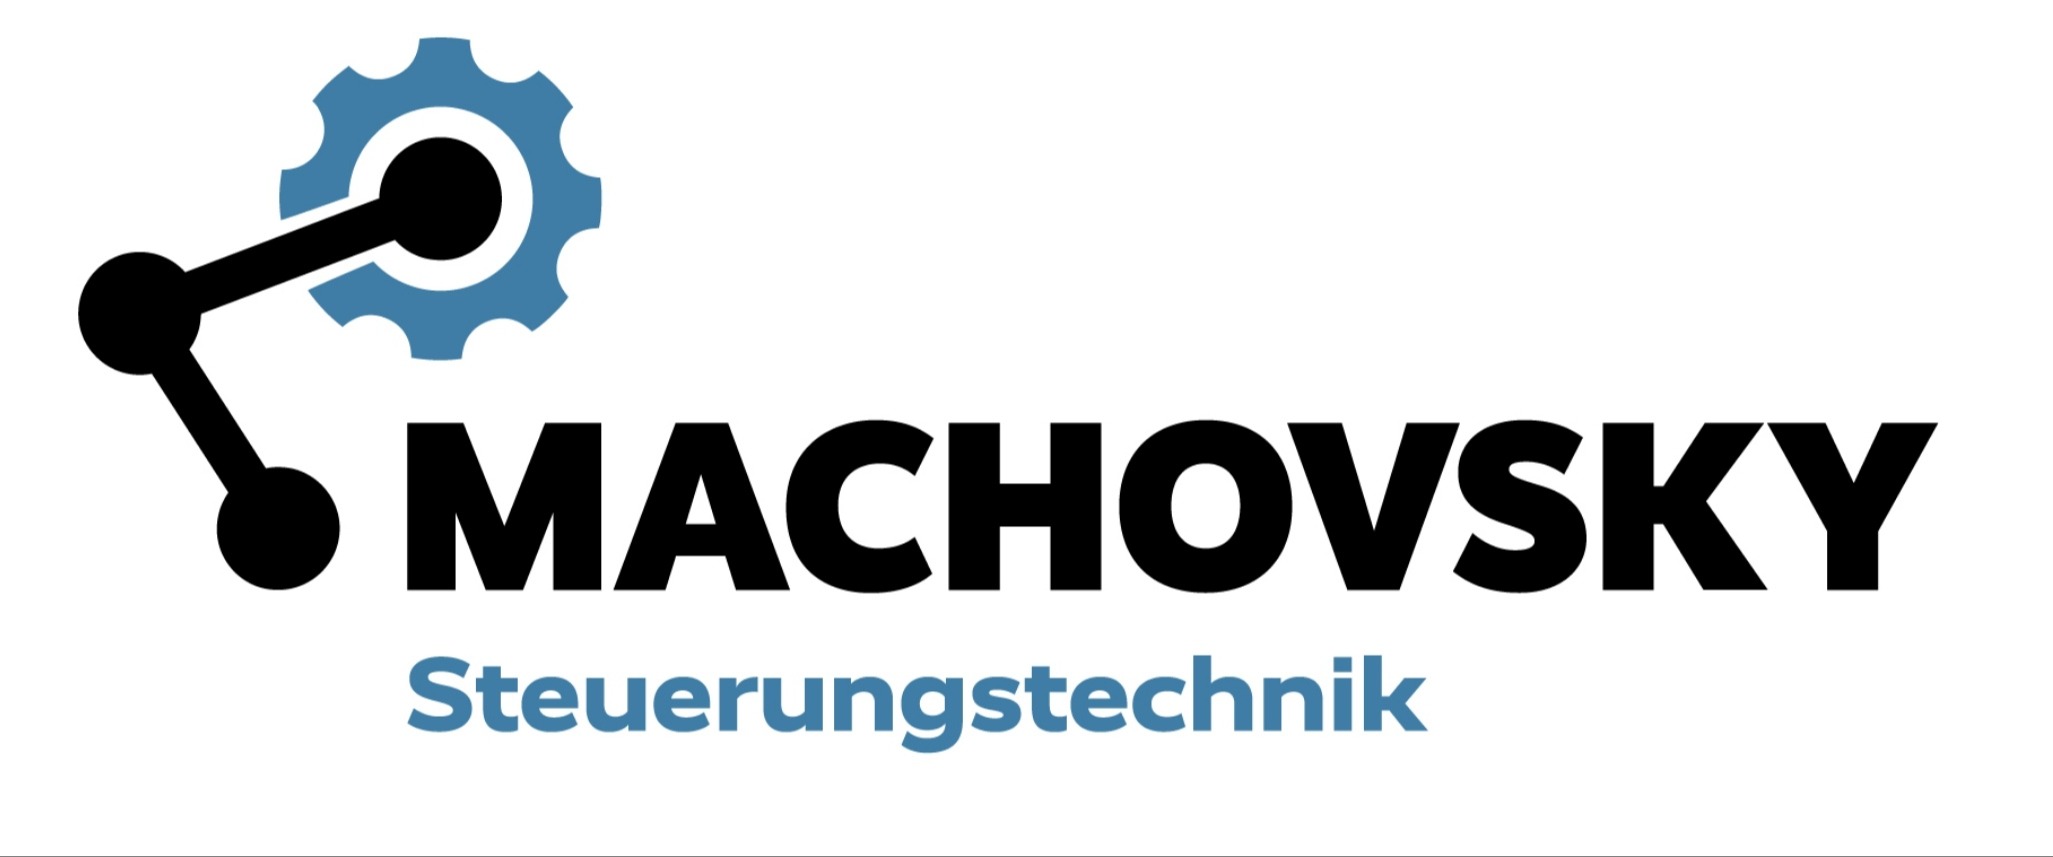 Steuerungstechnik-Machovsky